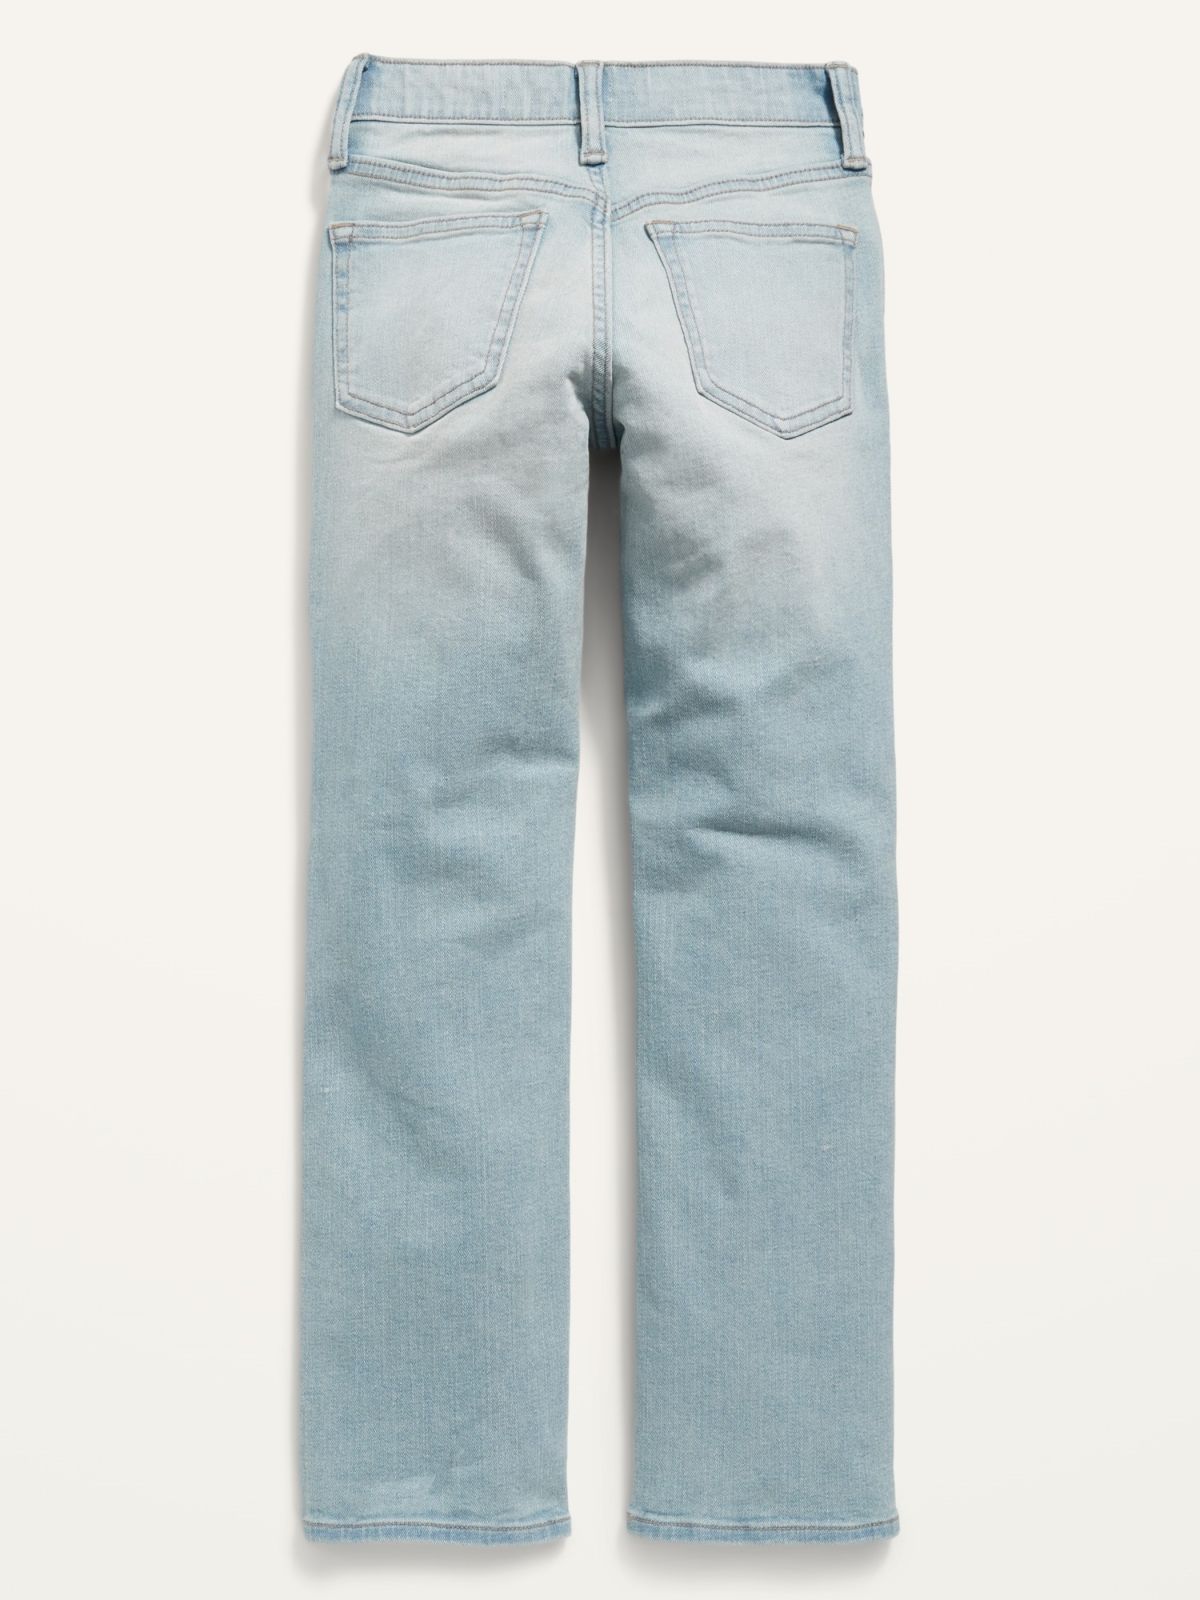  ג'ינס ארוך בגזרה ישרה של OLD NAVY